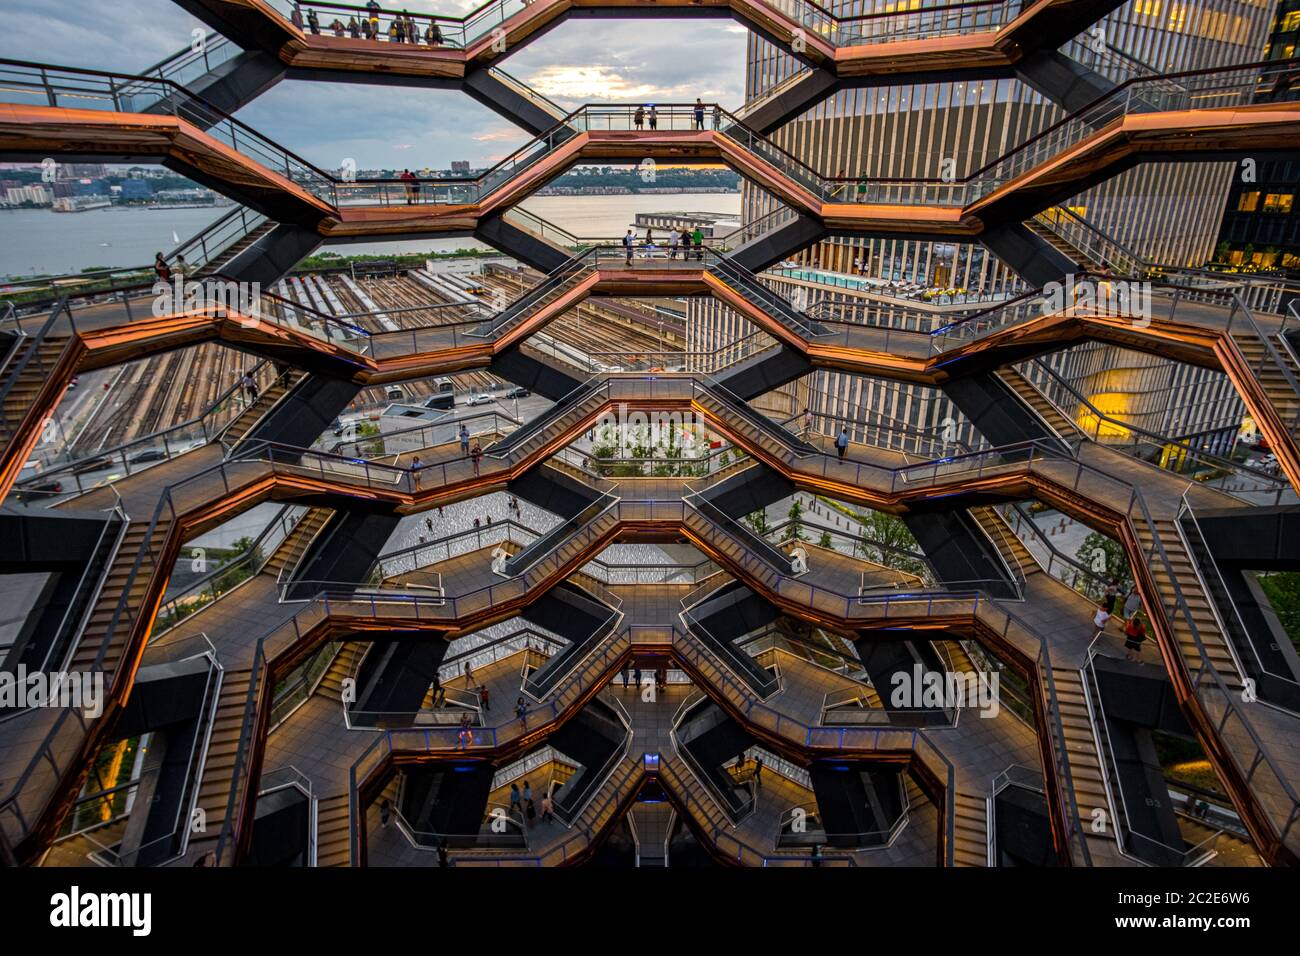 Bâtiment d'architecture moderne l'escalier en colimaçon Vessel est la pièce maîtresse des chantiers d'Hudson à New York Banque D'Images